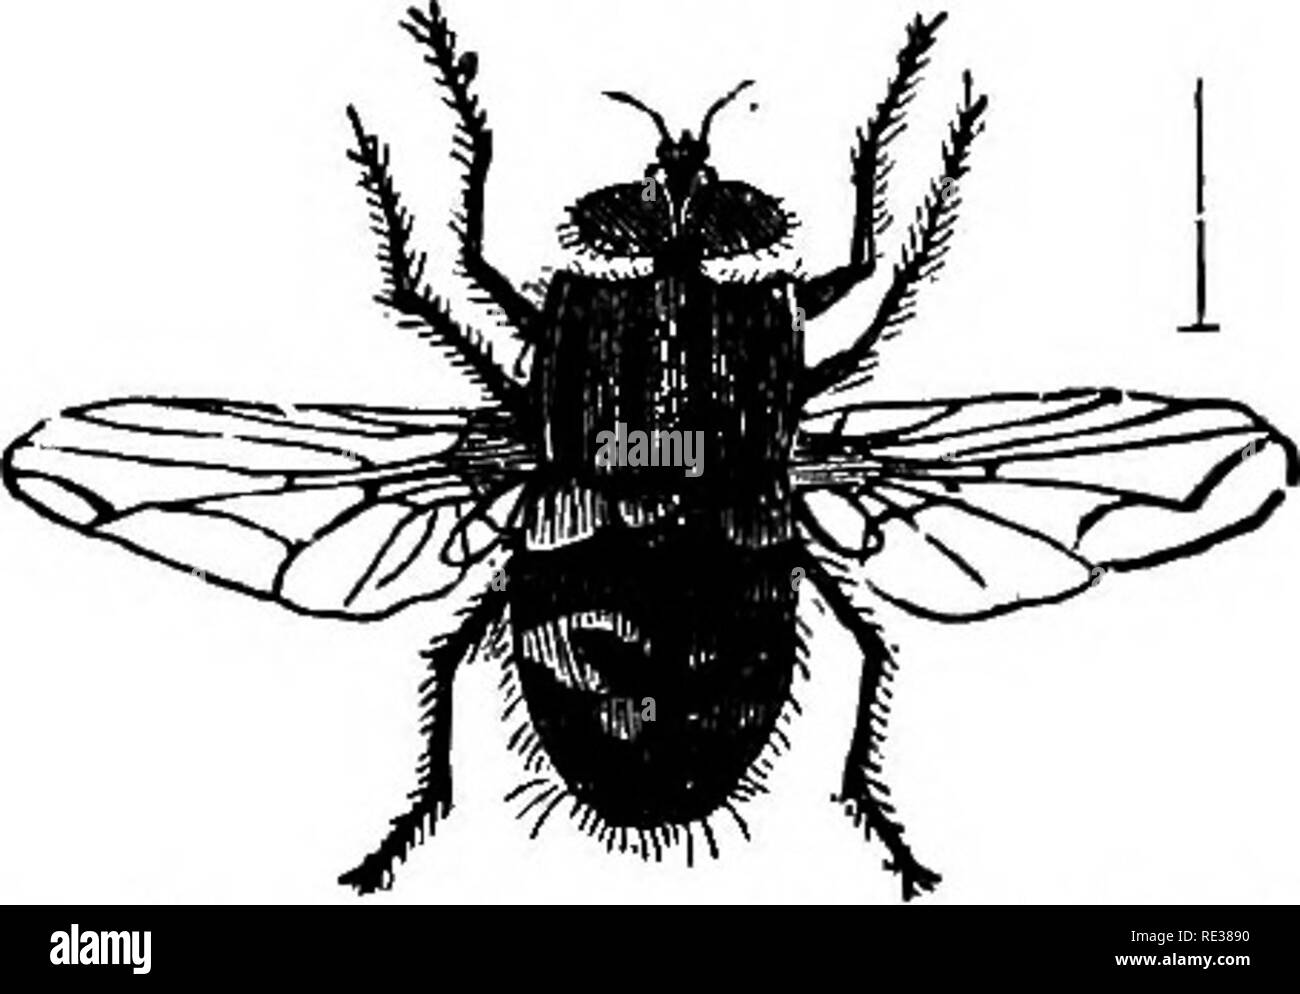 Alas de abejas Imágenes de stock en blanco y negro - Página 2 - Alamy